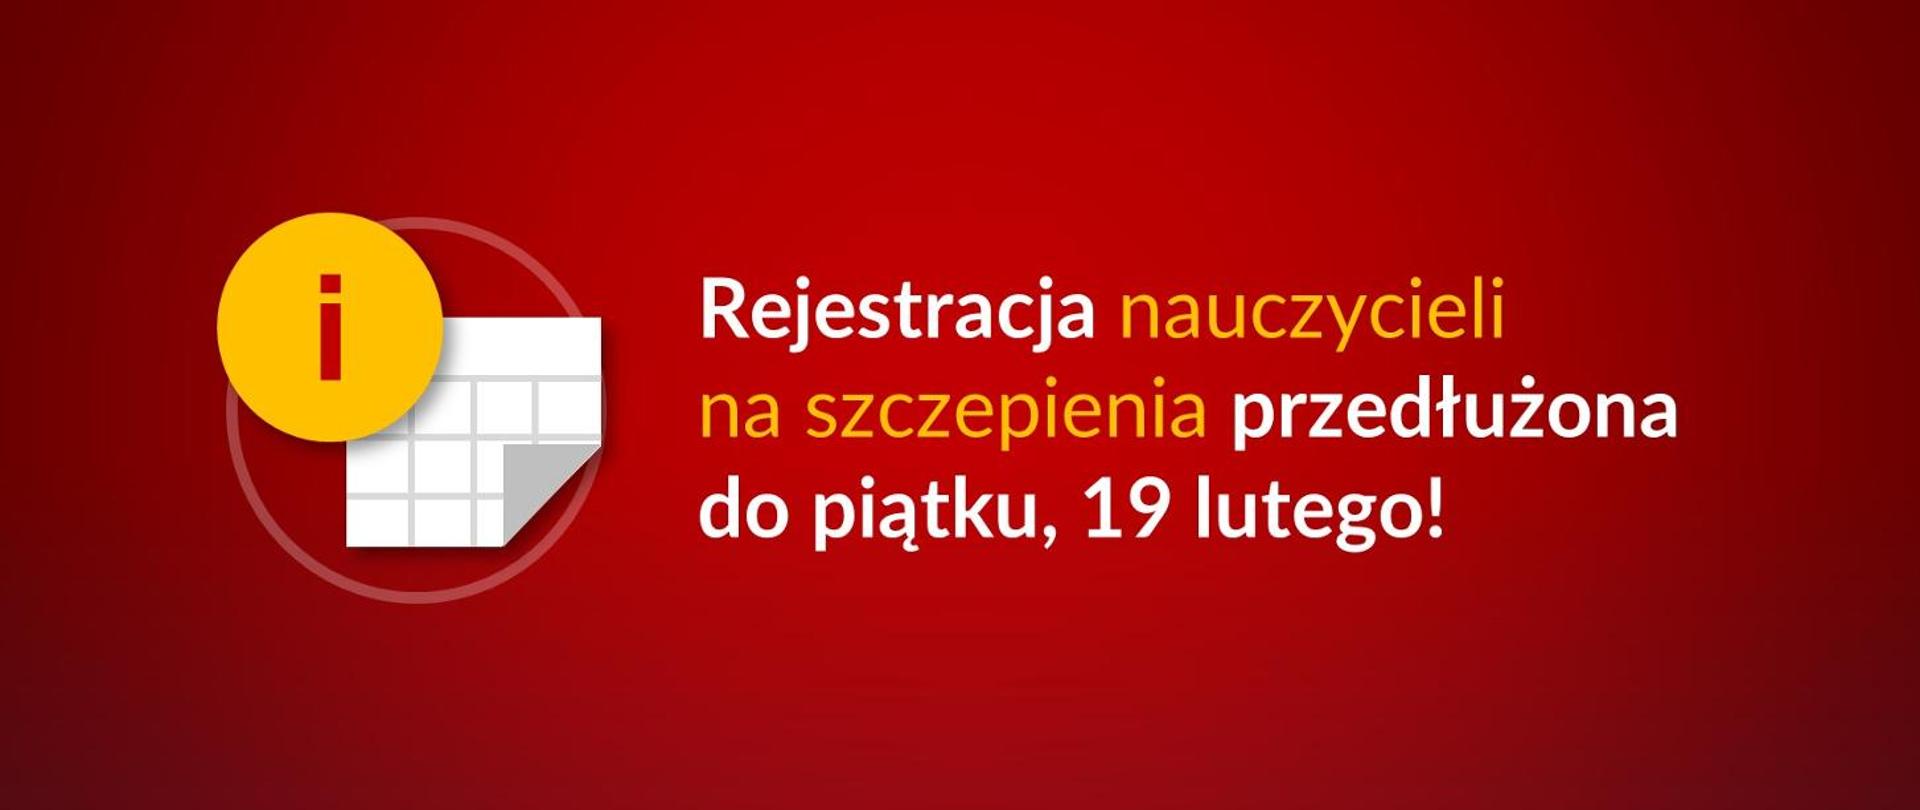 Grafika z tekstem: Rejestracja nauczycieli na szczepienia przedłużona do piątku, 19 lutego!